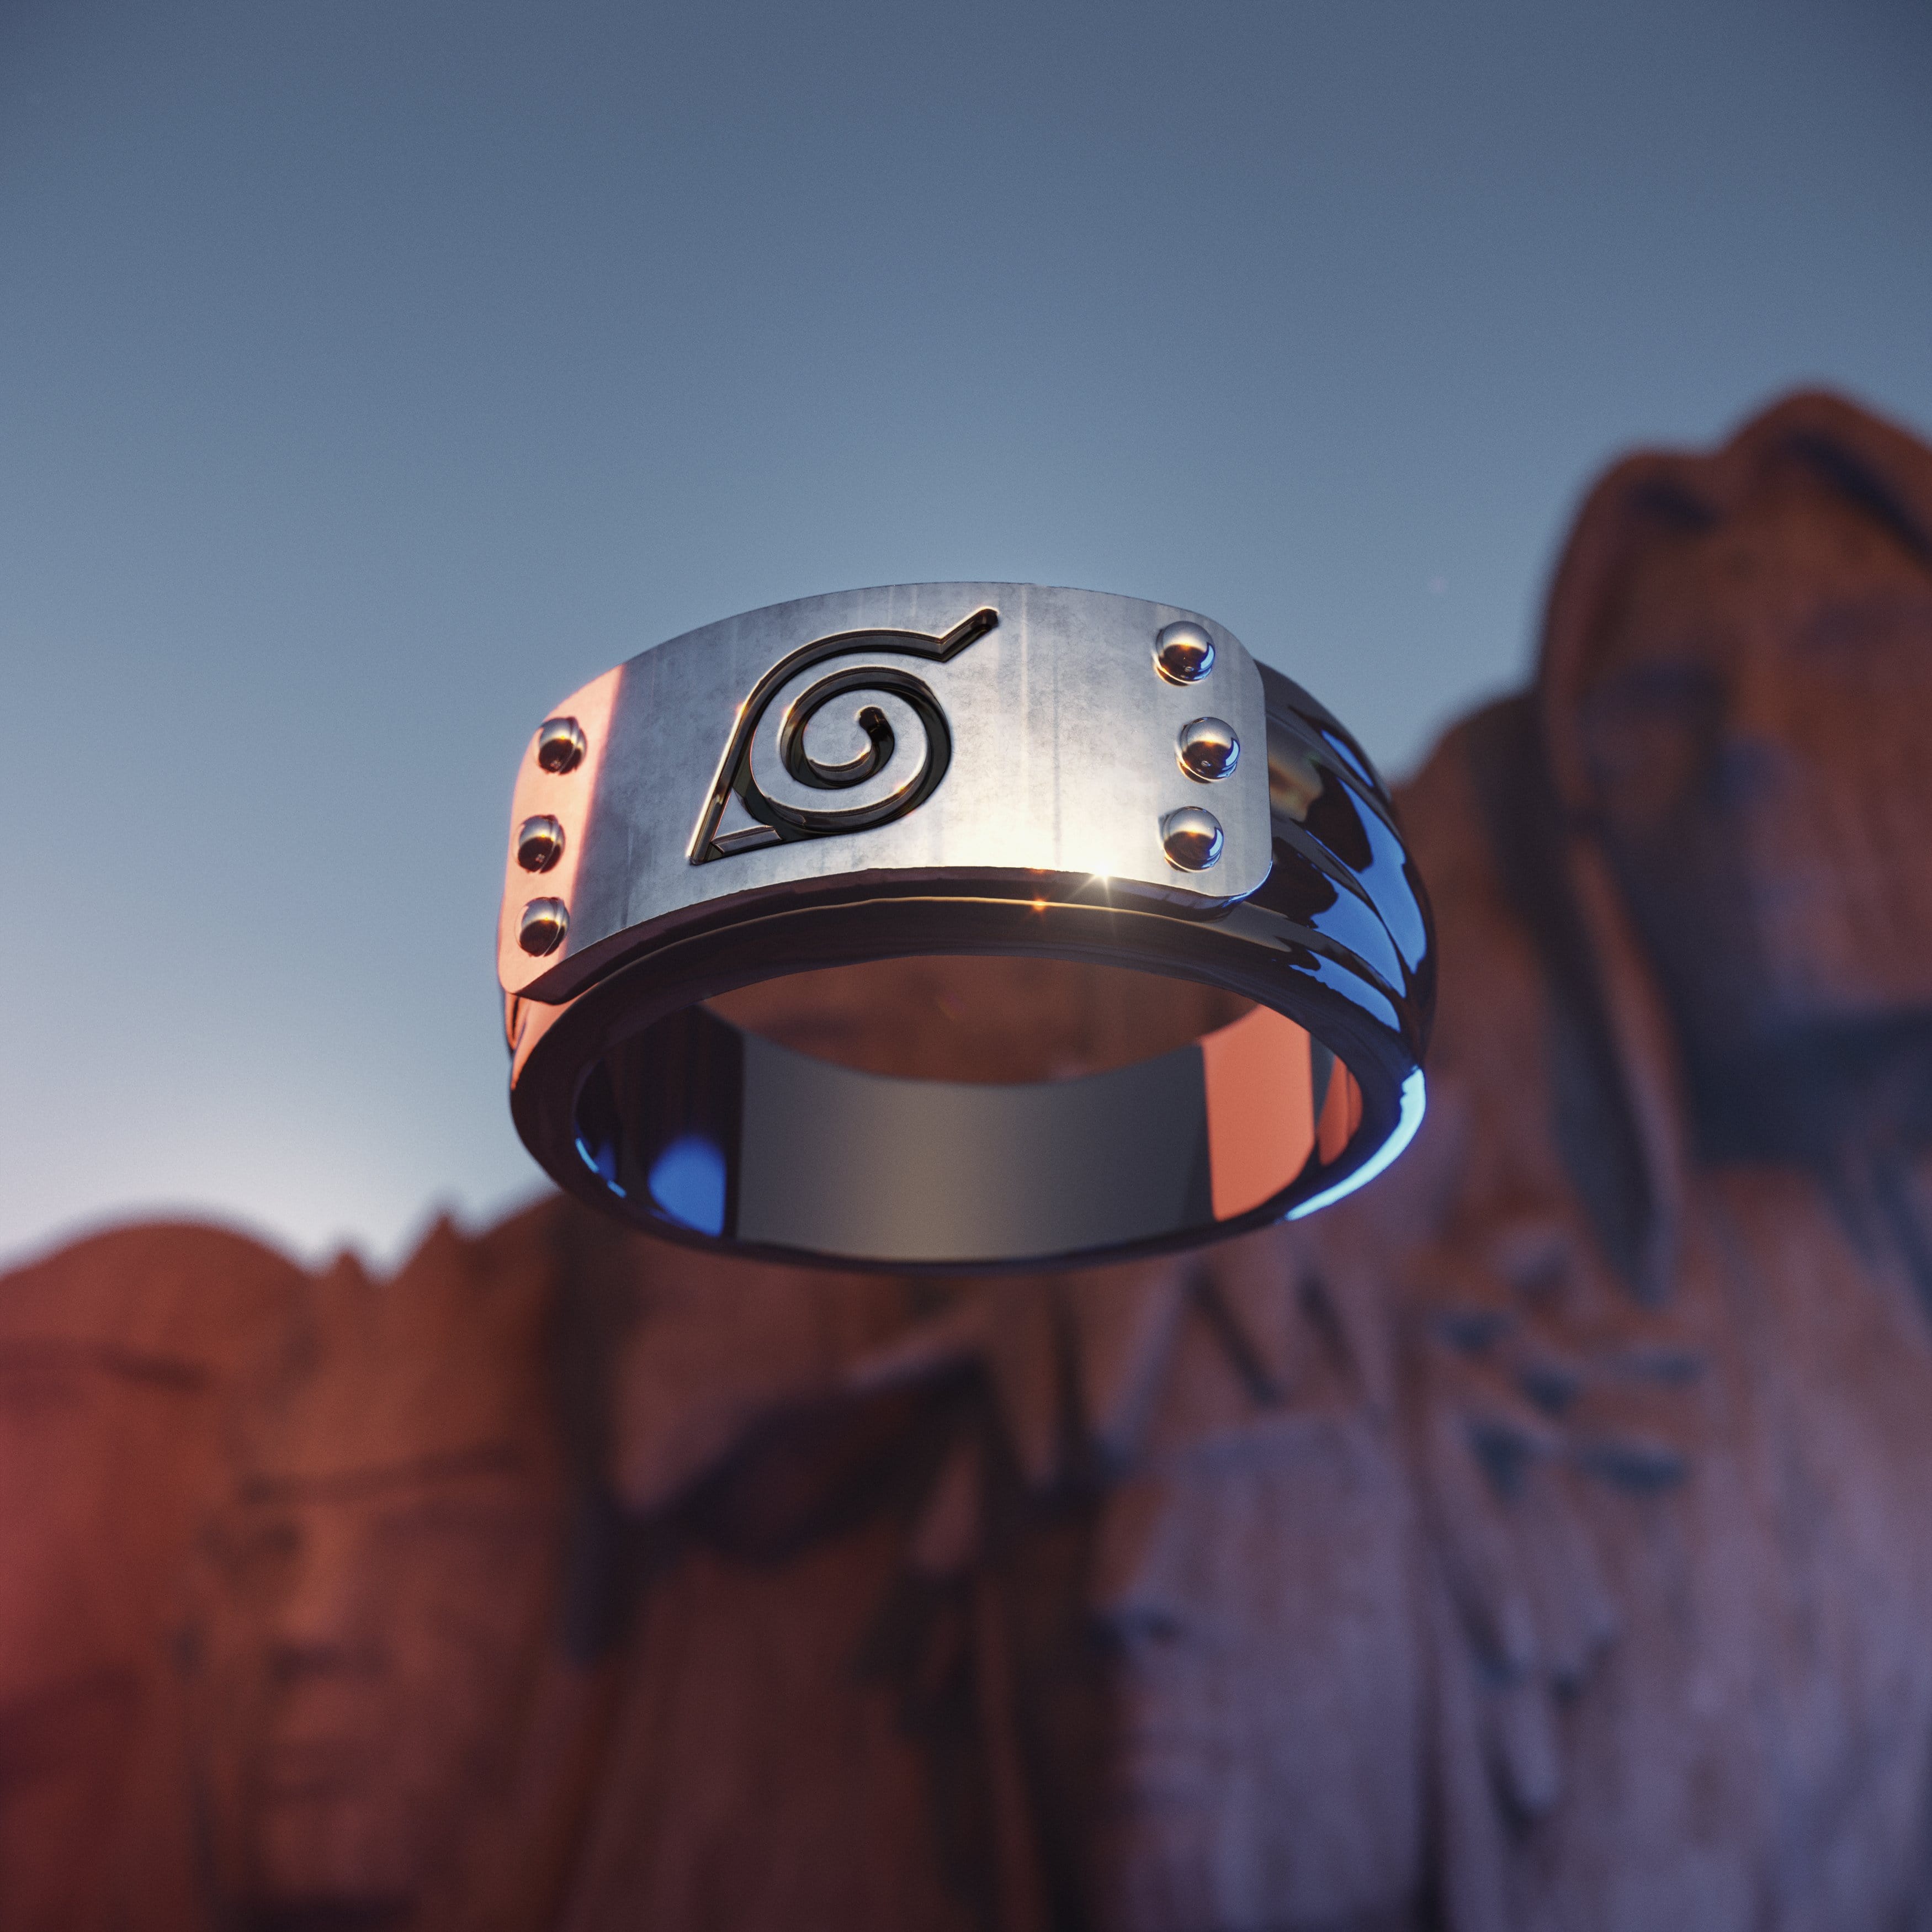 Naruto™ Hidden Leaf Village Headband Ring